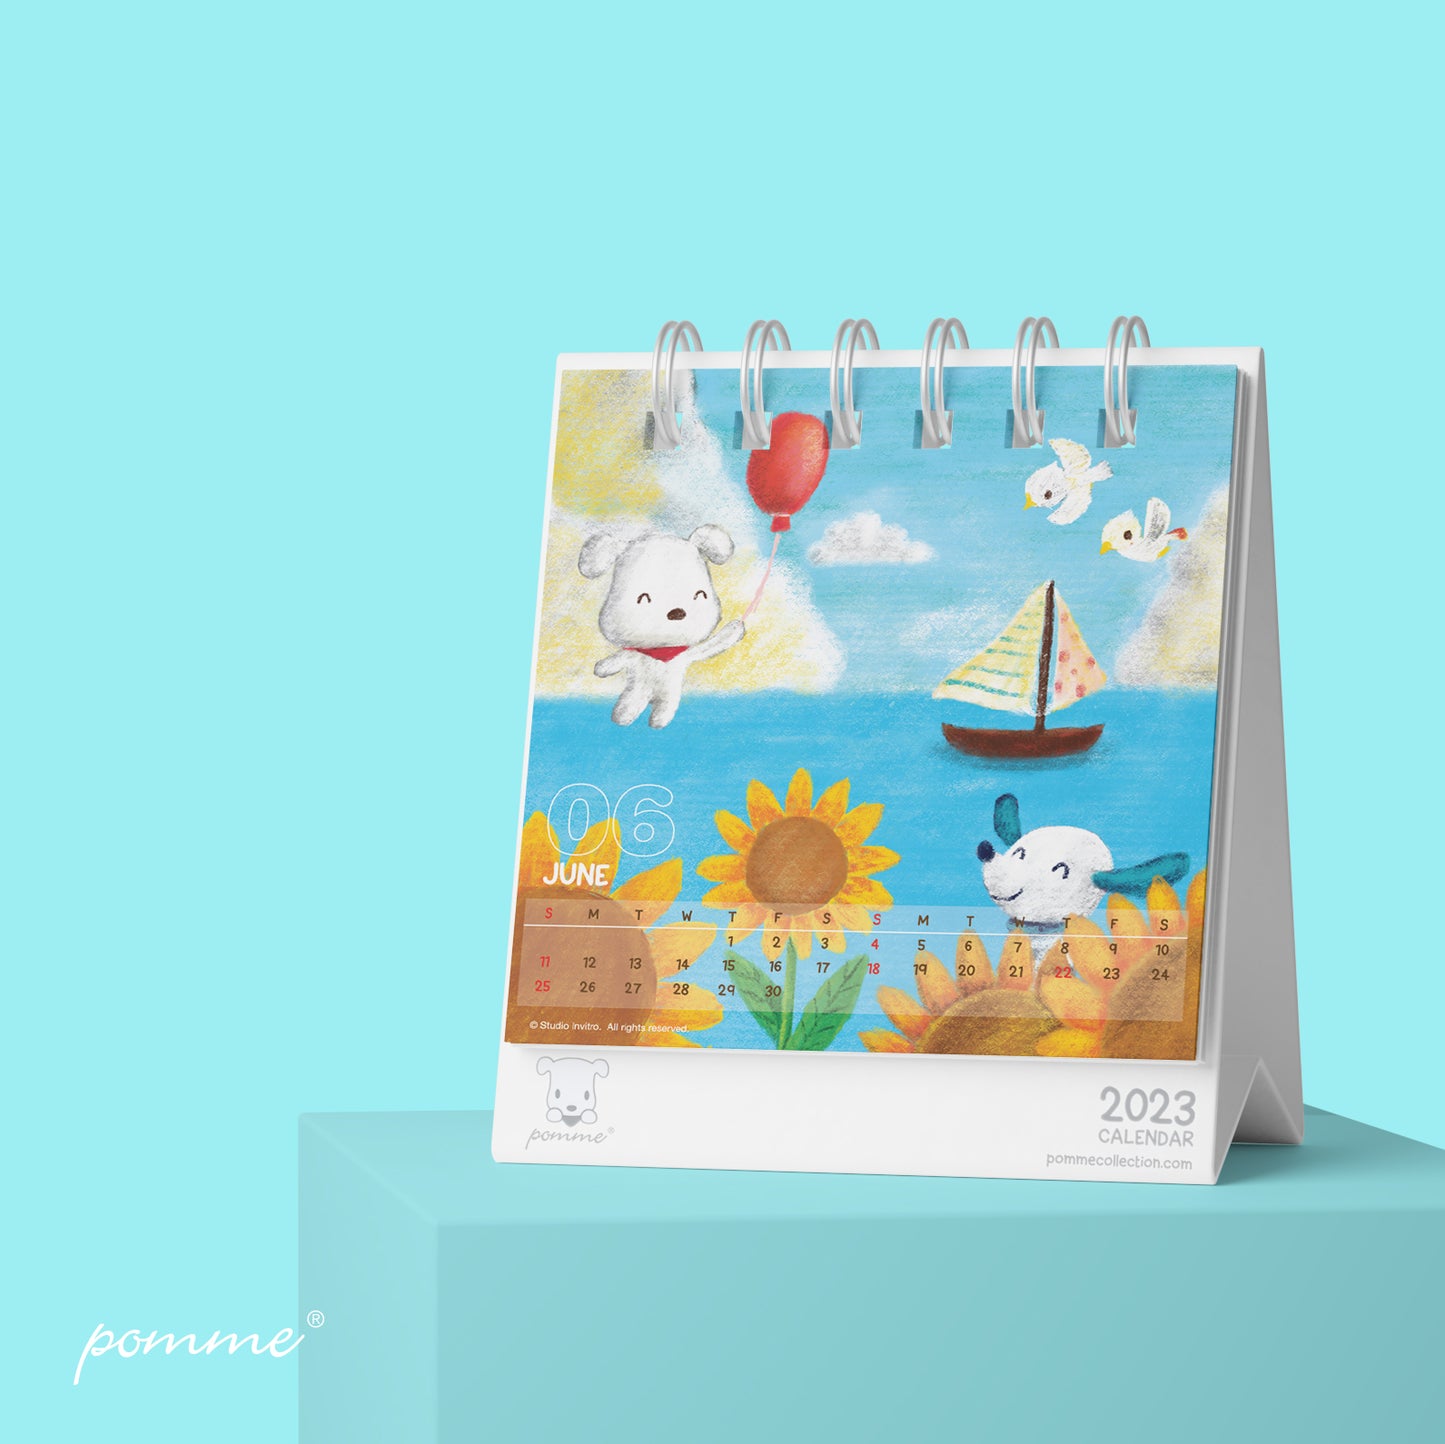 Free Gift : Pomme 2023 Calendar